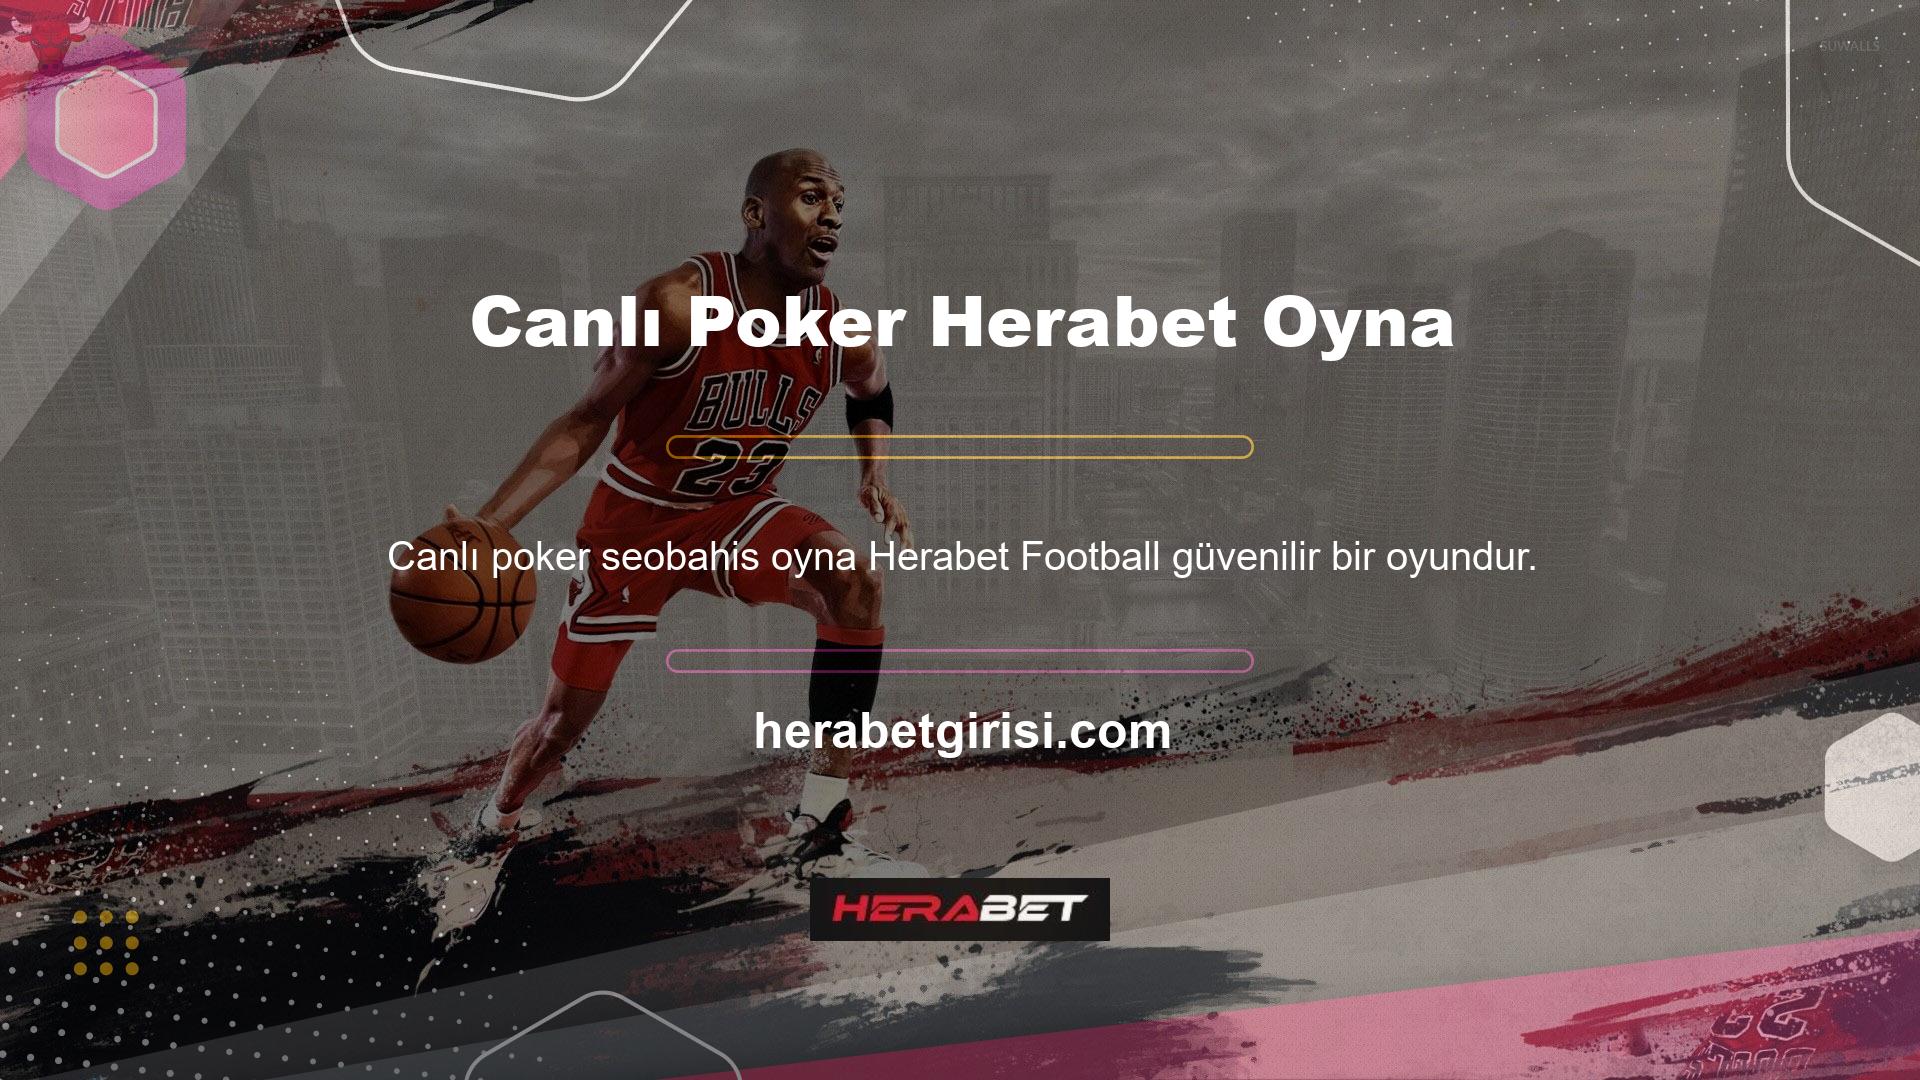 Herabet Canlı Poker oynayın ve futbol bahis sitelerinde güvenilir şekilde bahis yapın